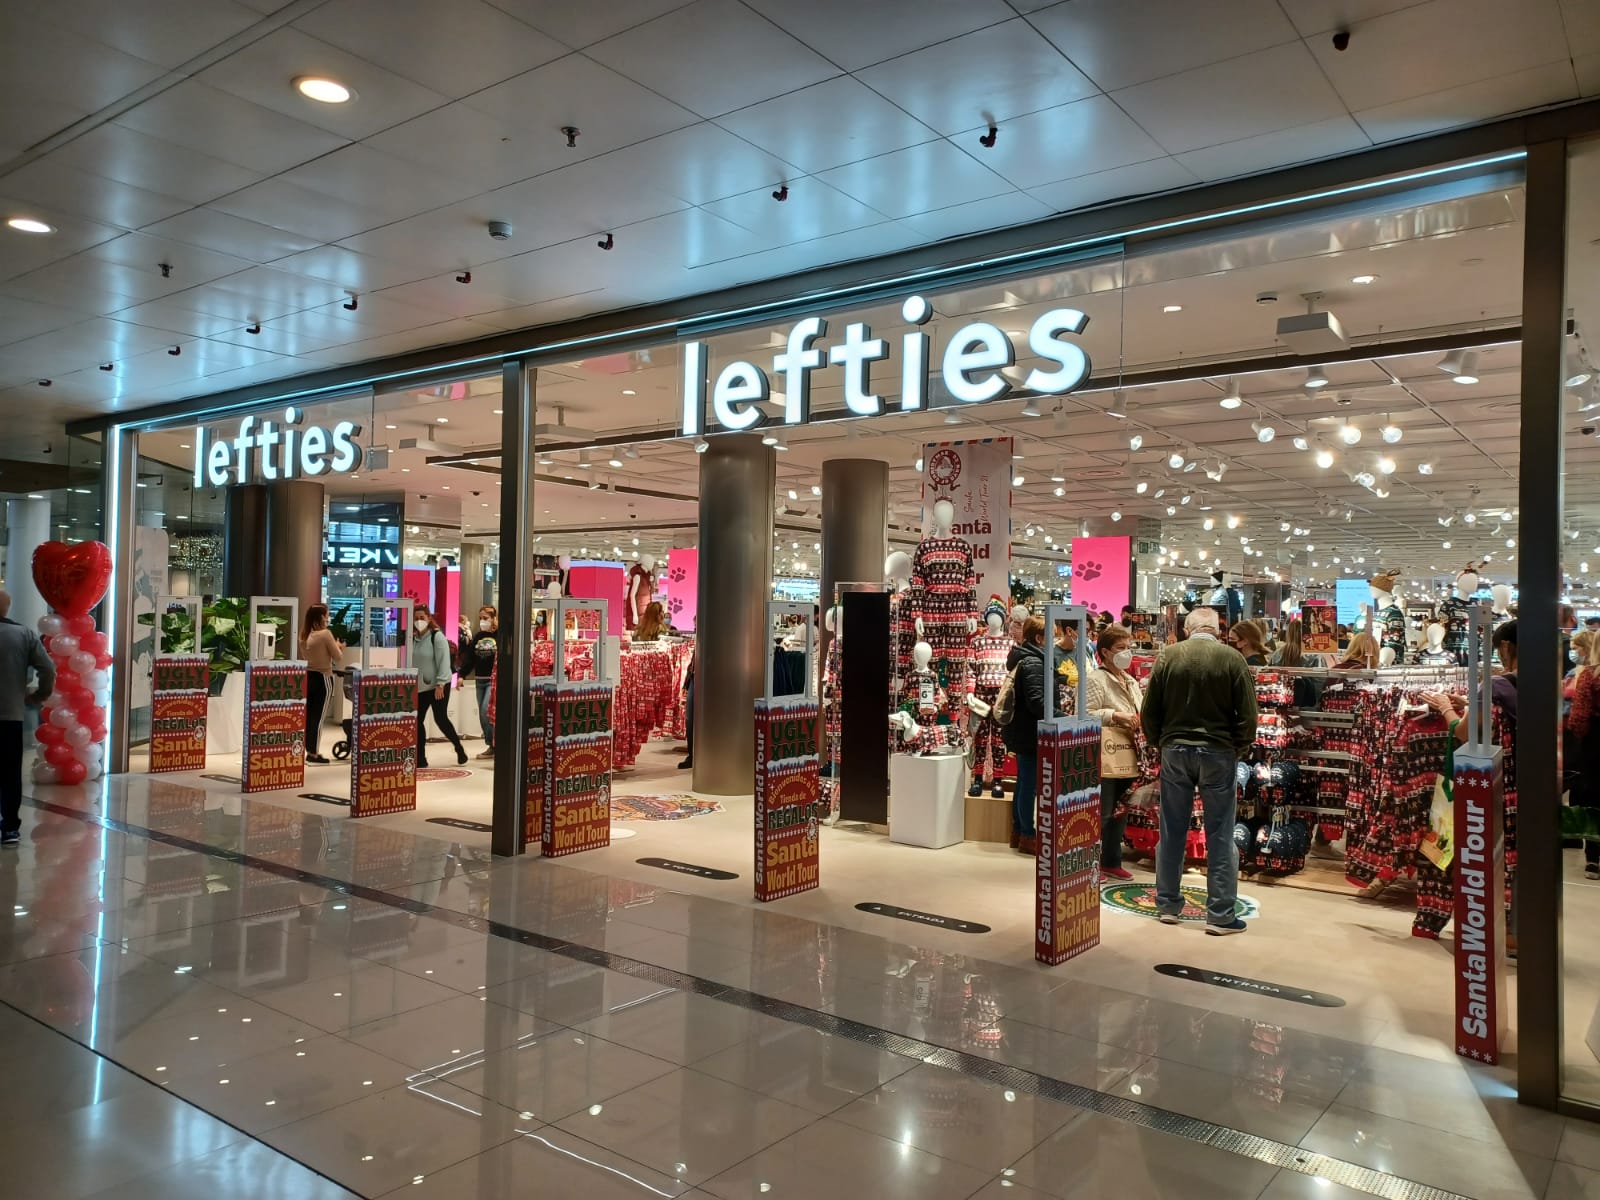 La primera tienda de ropa “Lefties” llegará a València muy